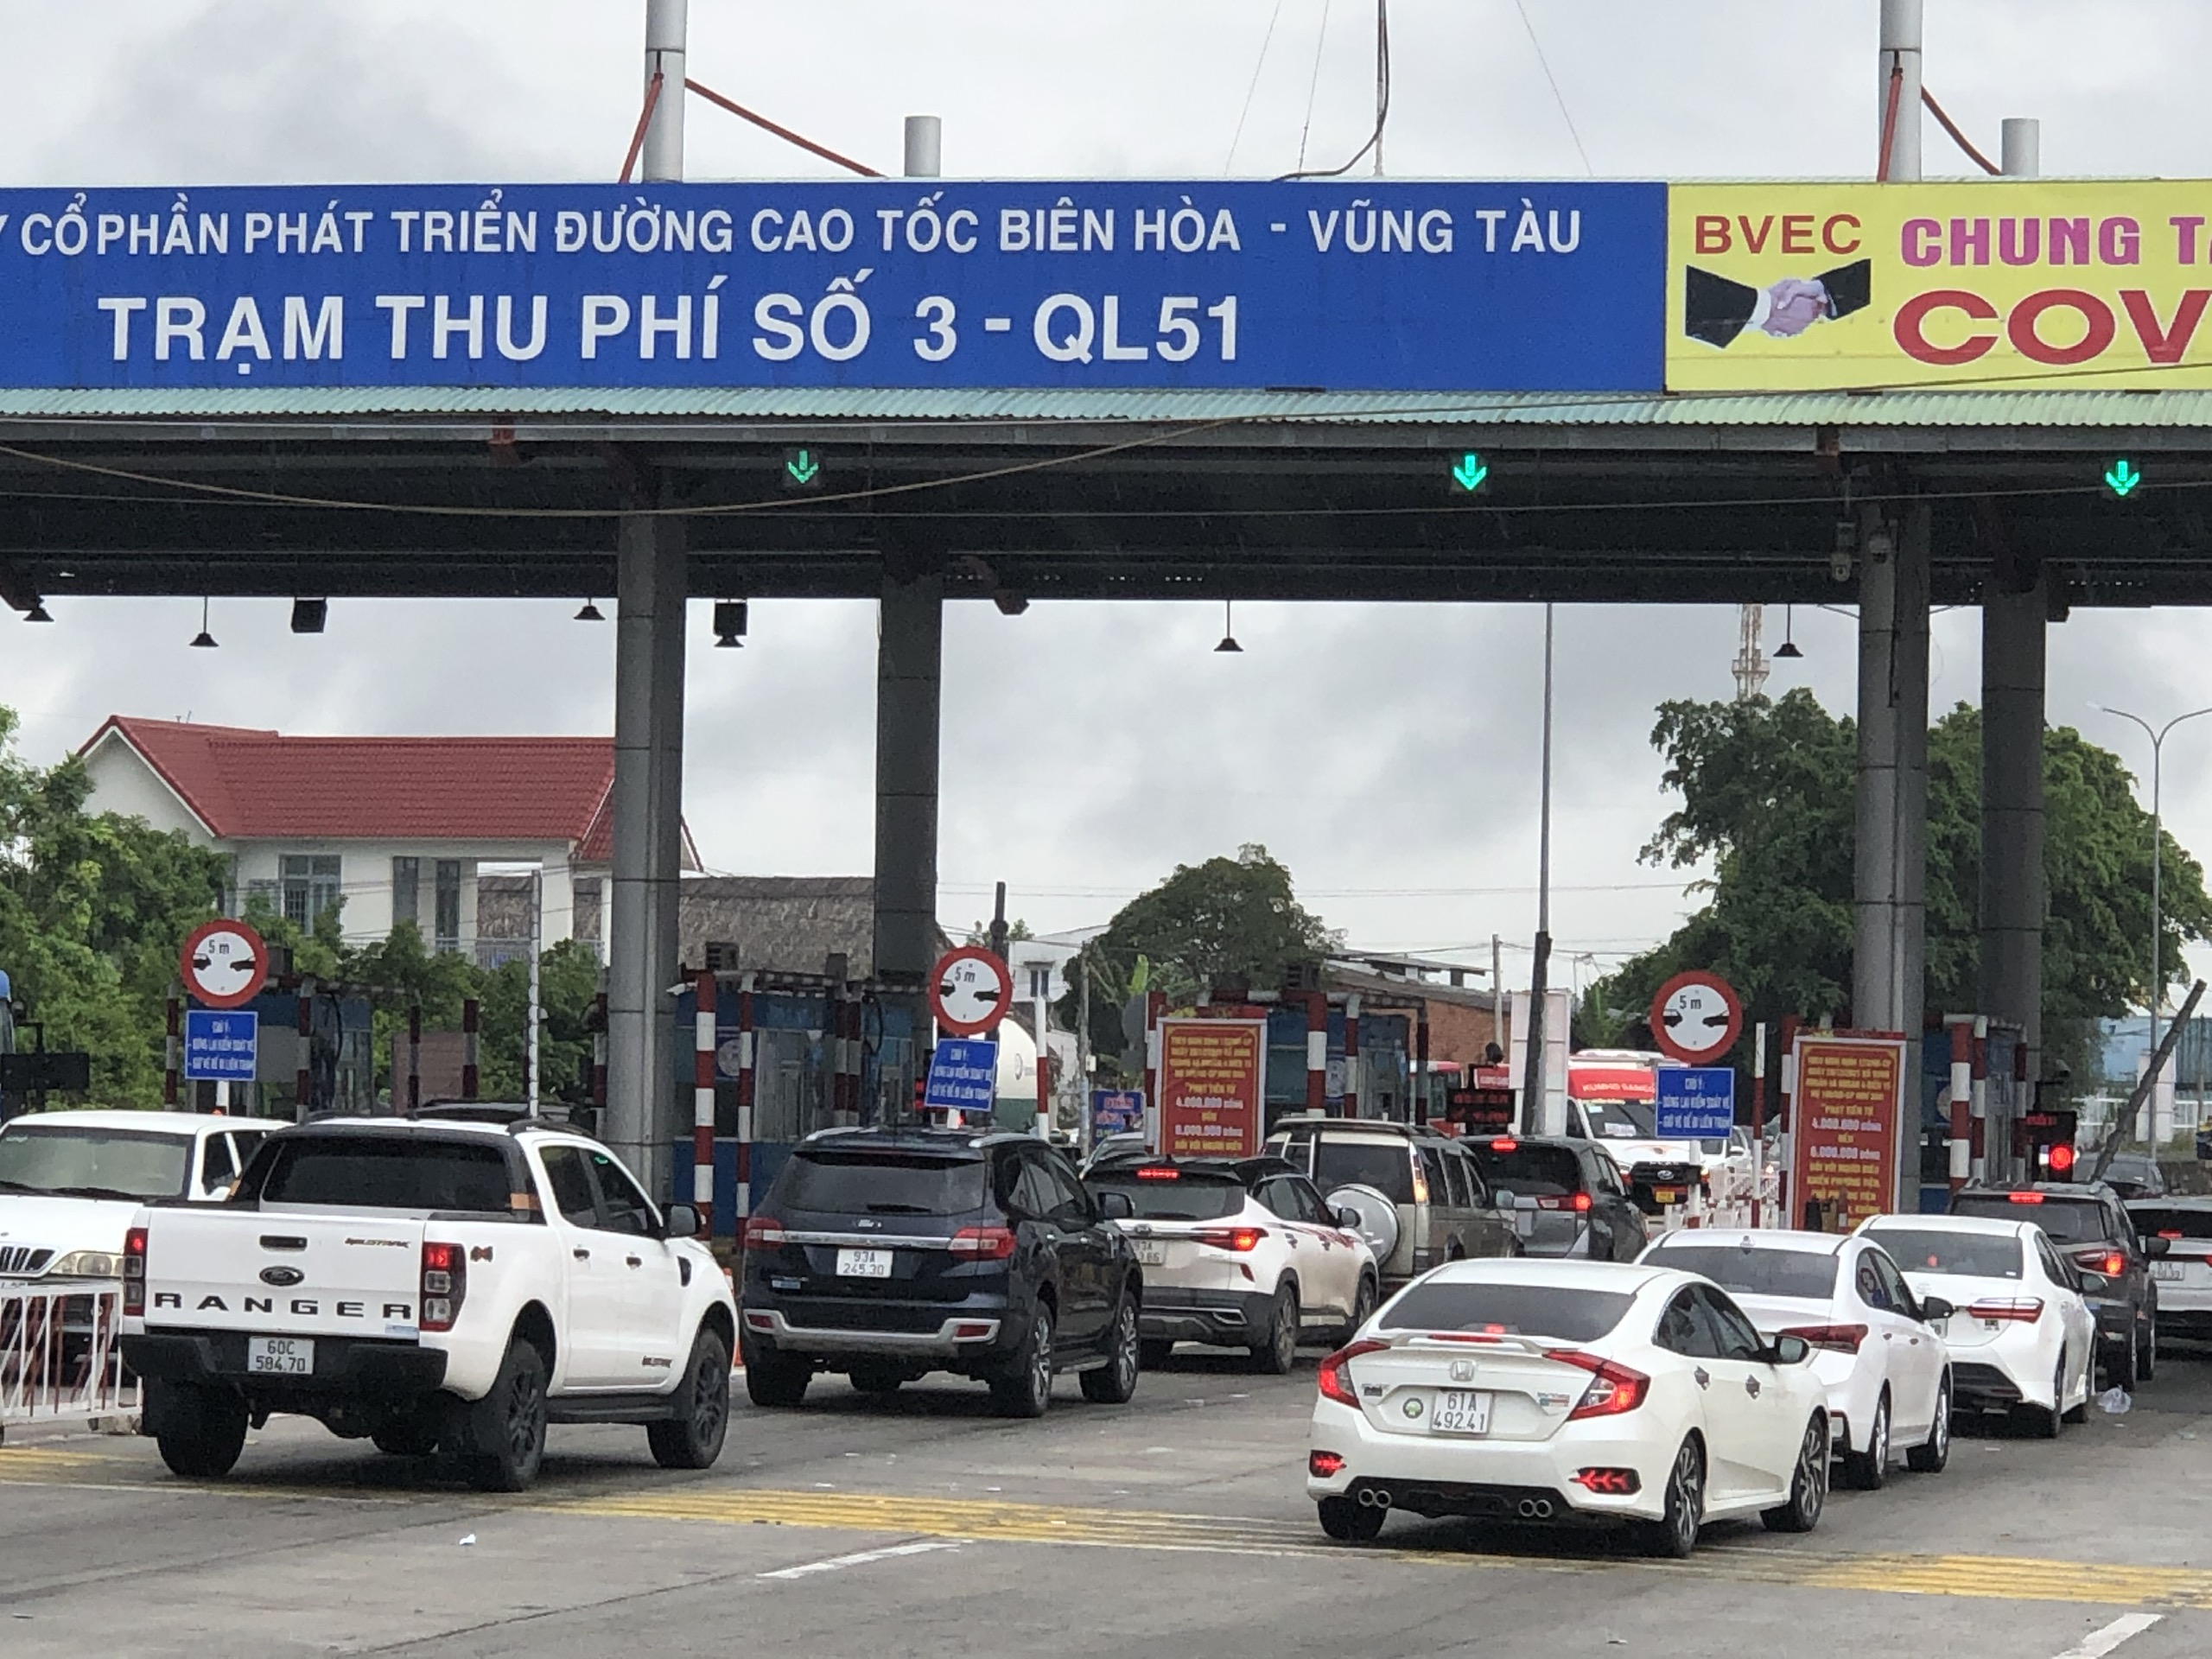 Việc thu phí thủ công trên tuyến QL51 là một trong những nguyên nhân dẫn đến ùn tắc giao thông  tại tuyến đường này vào các dịp cao điểm lễ, Tết. (Ảnh chụp tại Trạm thu phí T3, xã Tân Hải, TX.Phú Mỹ)